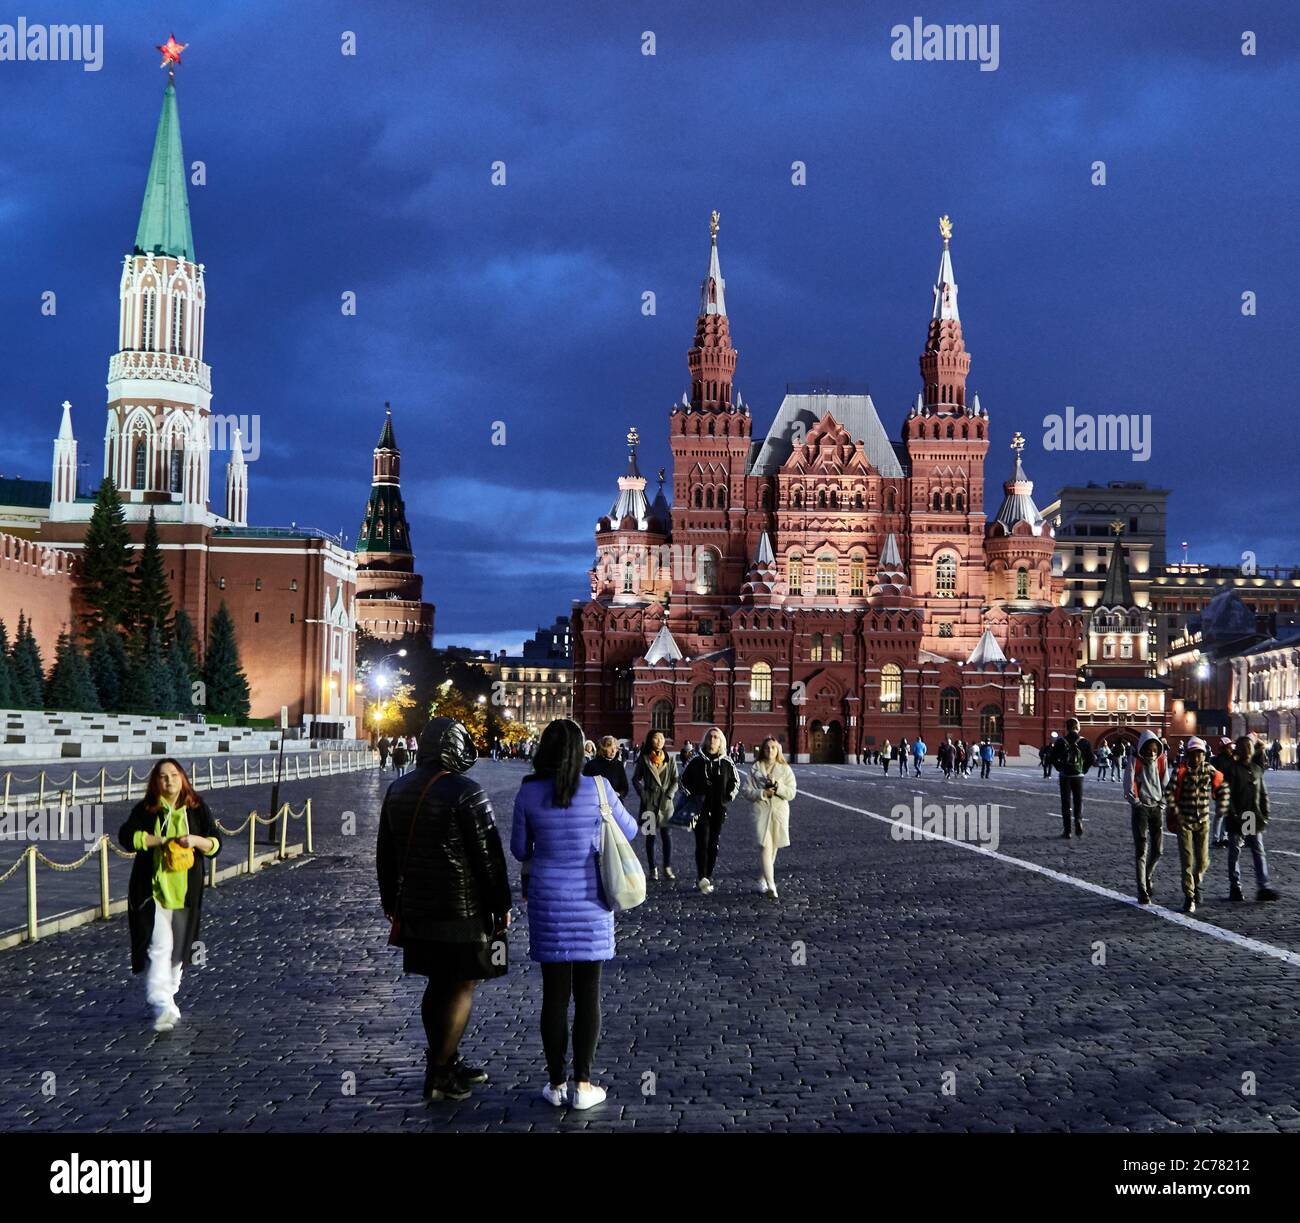 Mosca, Russia. Il Museo storico di Stato e il Palazzo del Grande Cremlino, situati sulla Piazza Rossa, sono storia russa. Al crepuscolo molti popoli amano camminare sulla Piazza Rossa. Foto Stock